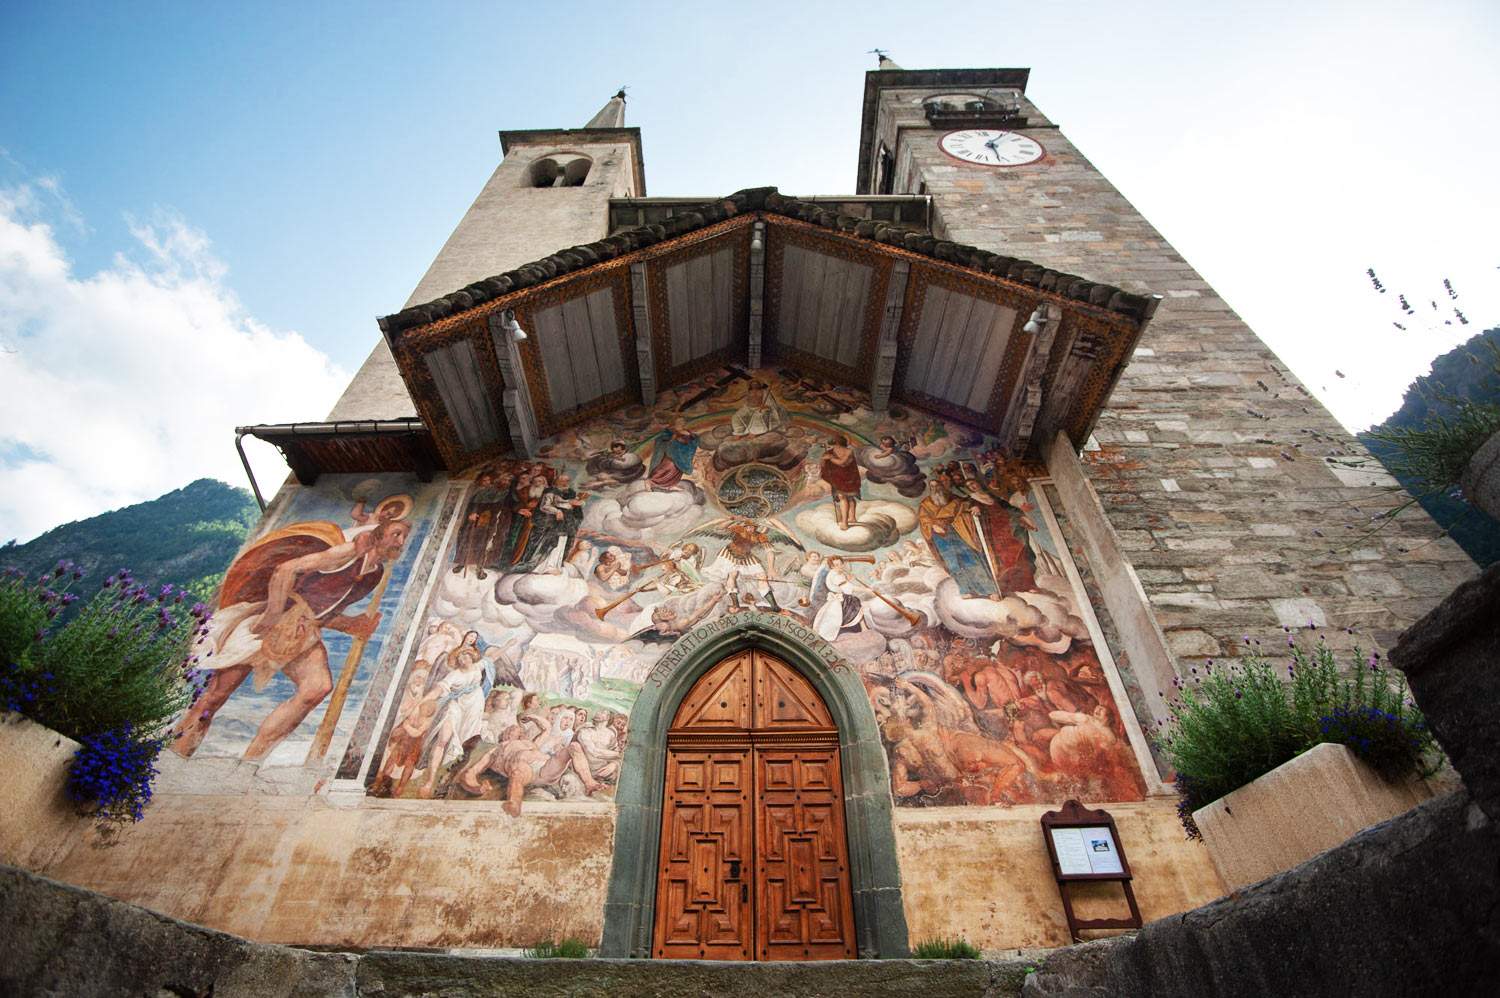 Les églises du Val Grande : quatre trésors artistiques méconnus dans la région de Vercelli